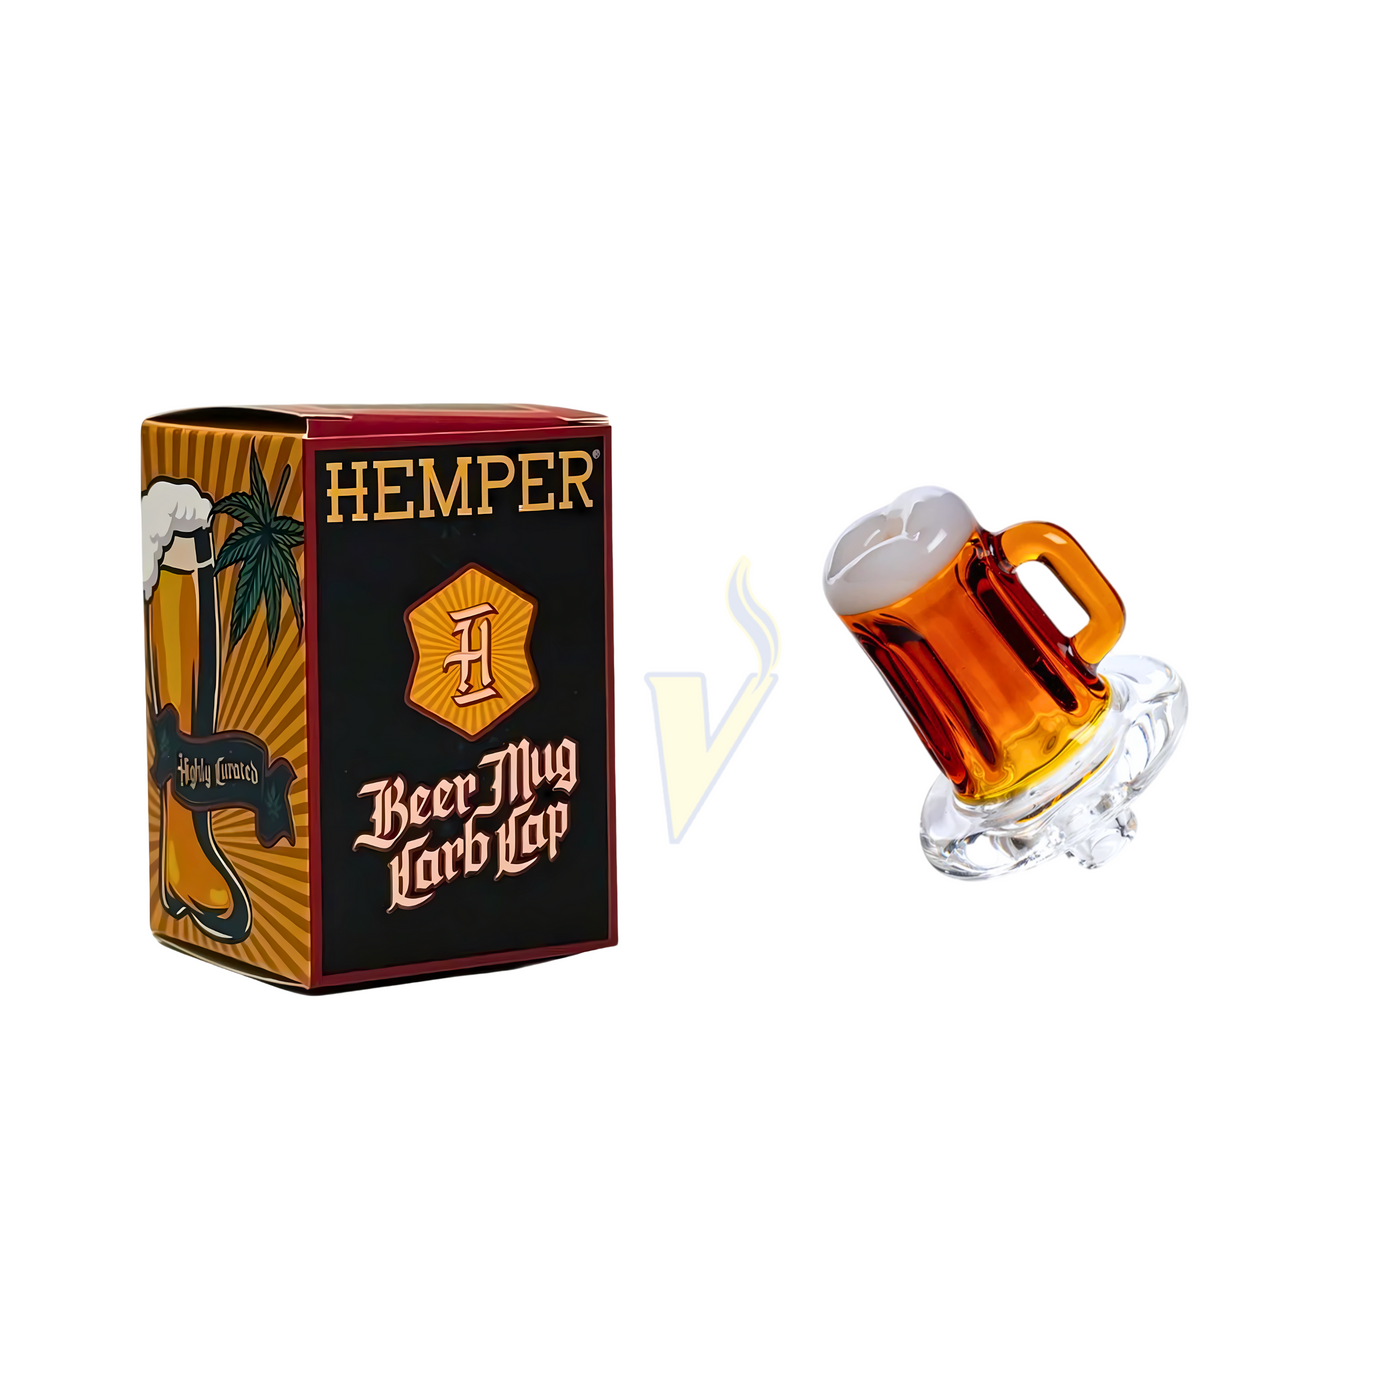 Hemper Carb Cap